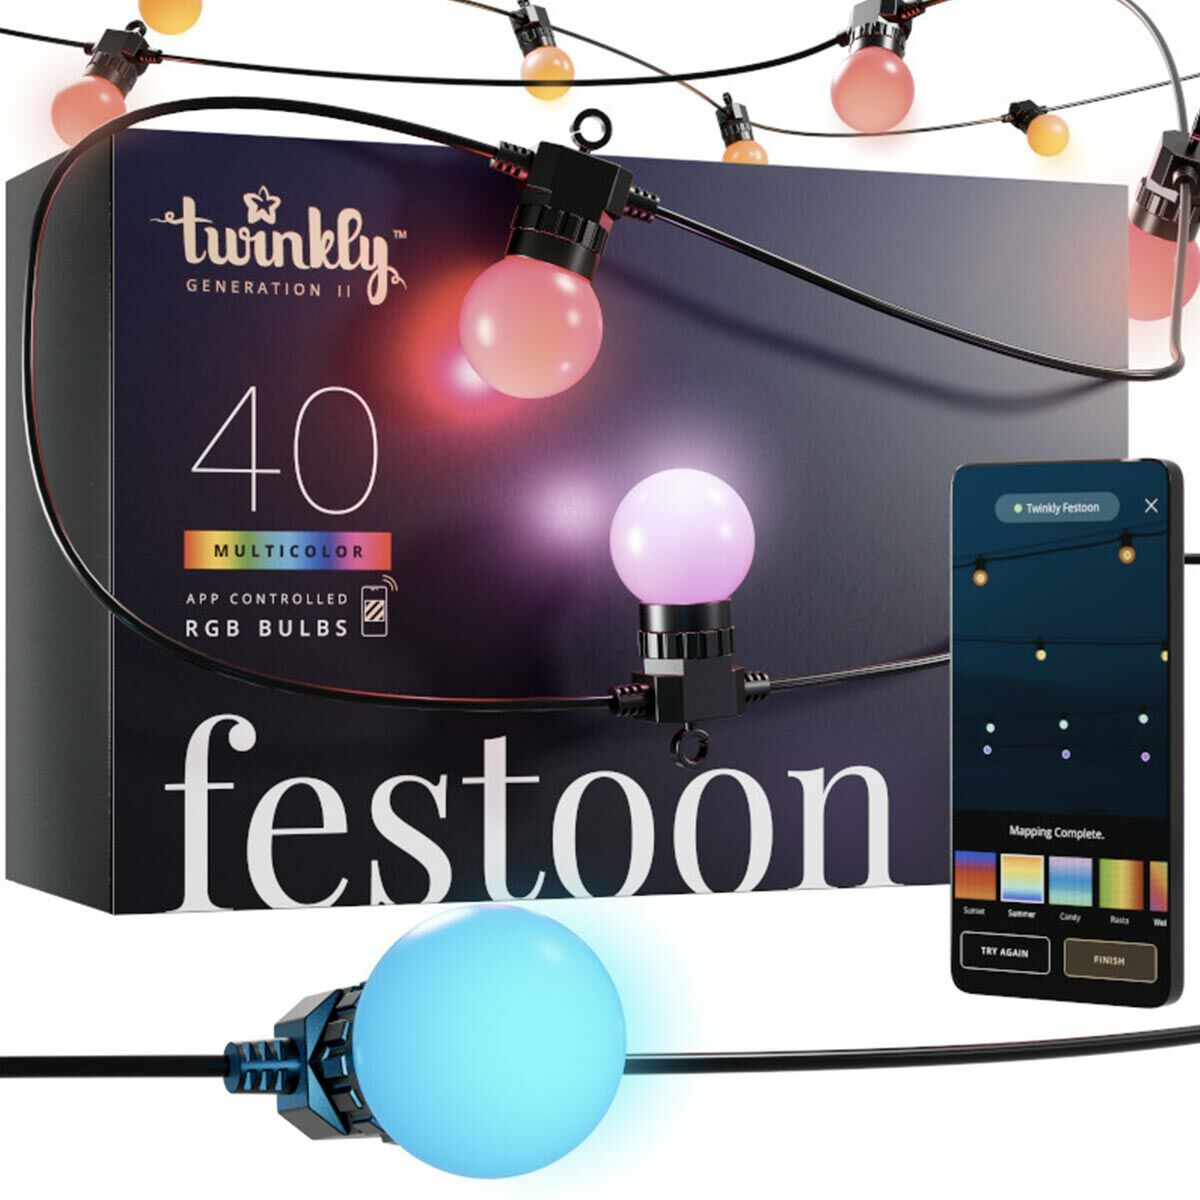 Smart App Controlled Twinkly Festoon Lights - Gen II image 1